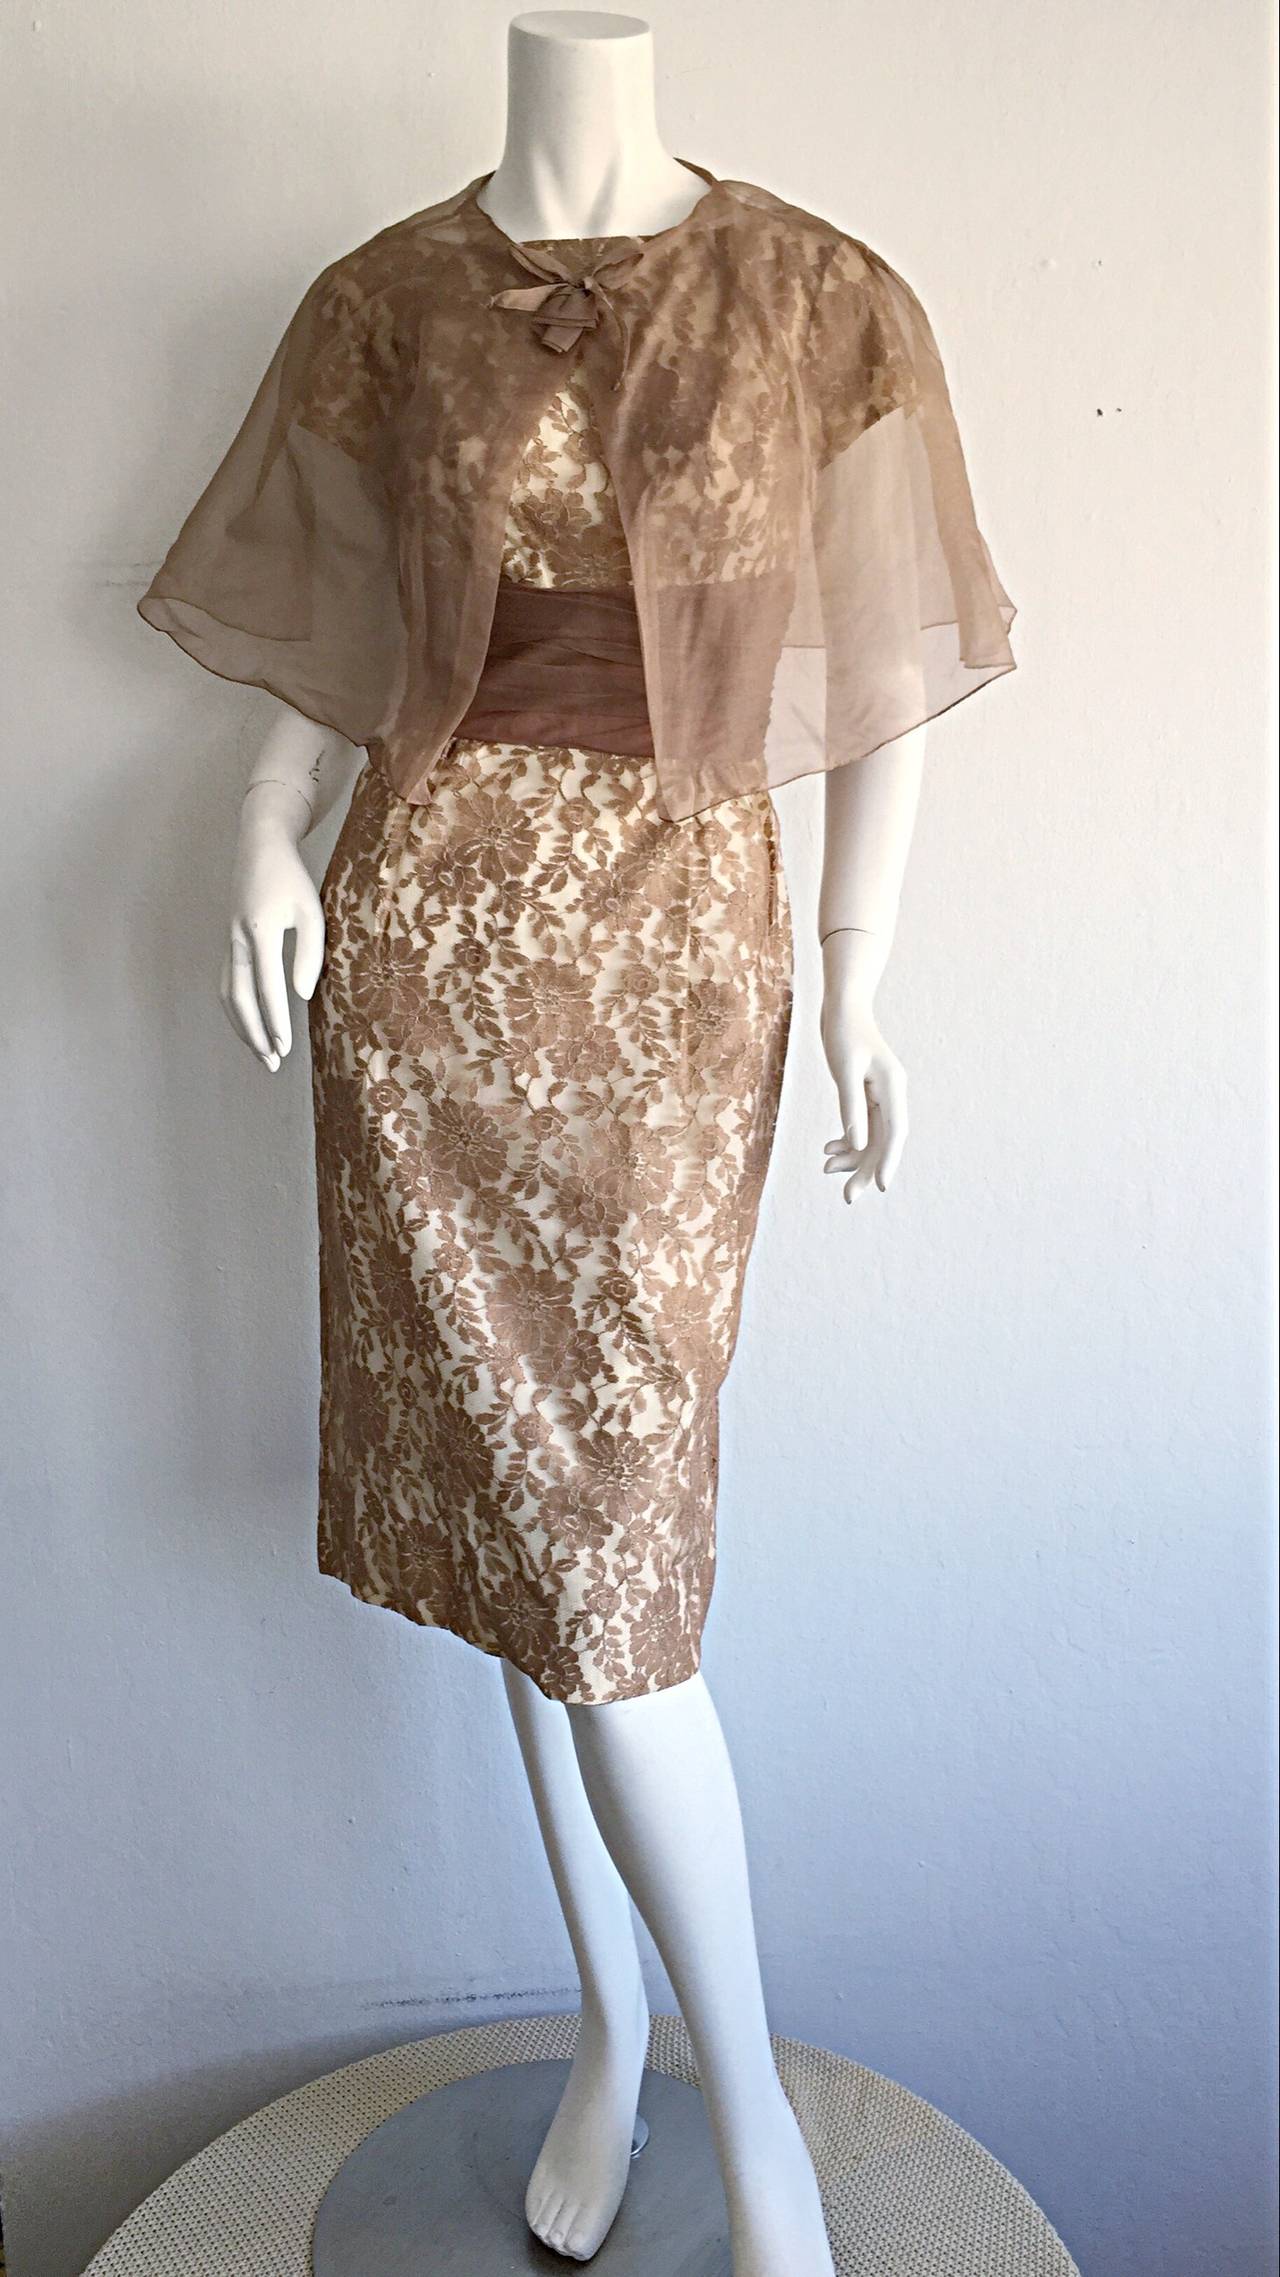 Erstaunlich Vintage 1950s Demi Couture Französisch Spitze Kleid und Caplet! Wunderschöne beige/nude/braune Spitze, mit passendem Caplet. Tadellose Konstruktion, die größtenteils von Hand genäht wurde.  Bombenmäßige Passform, die sich leicht von Tag